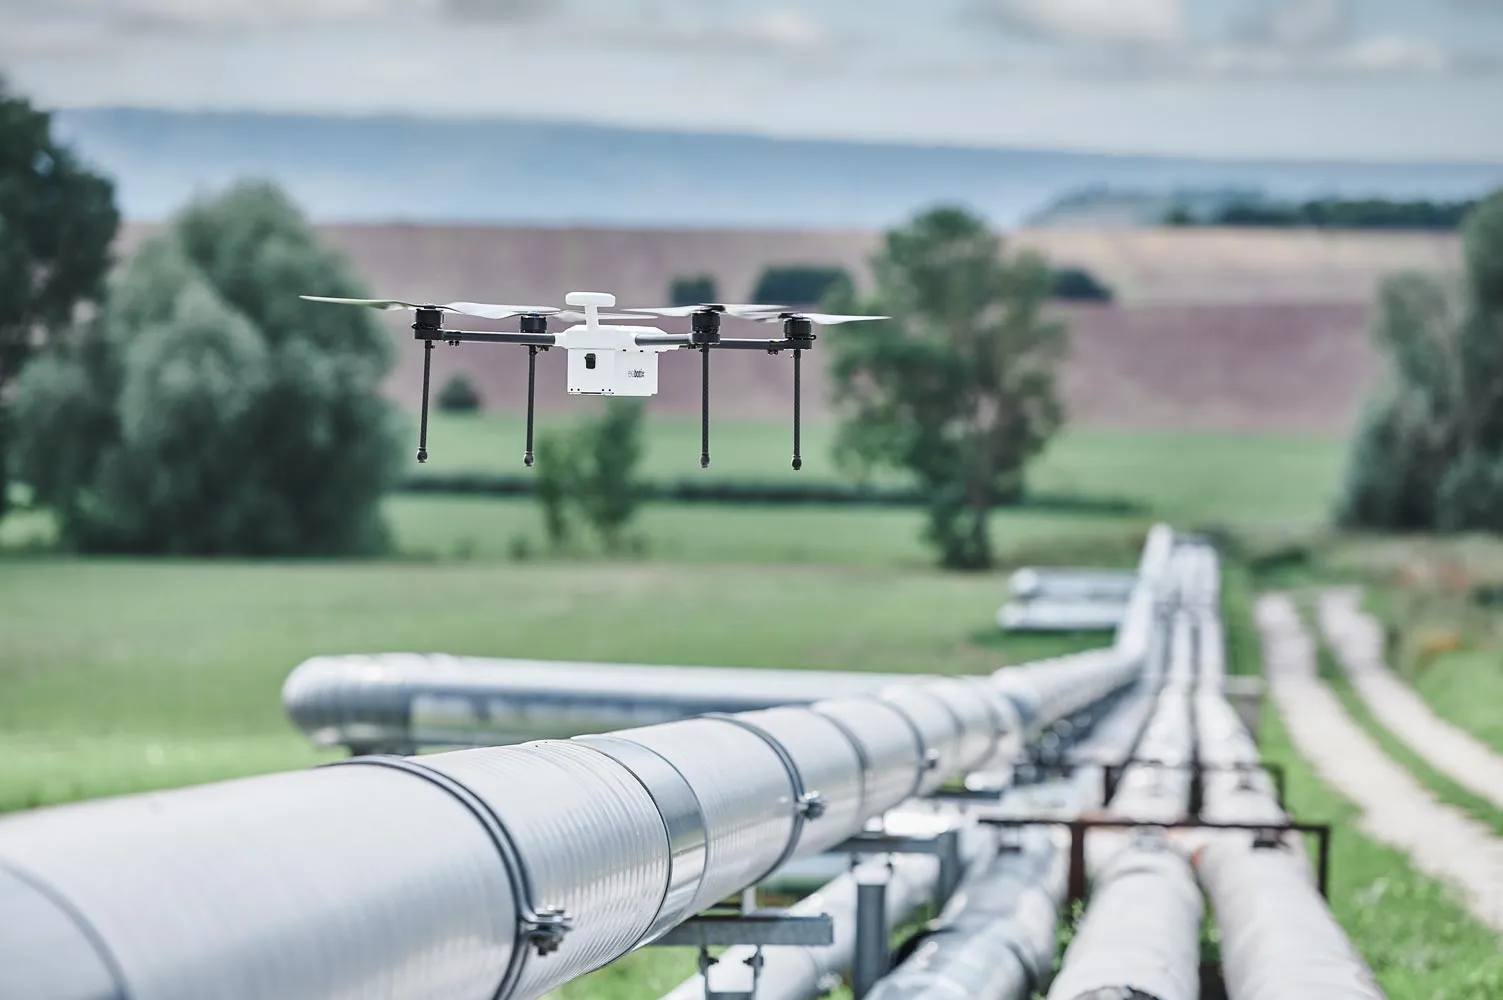 Zelos Drohne schwebt über einer Pipeline, die durch eine unbewohnte Landschaft läuft.